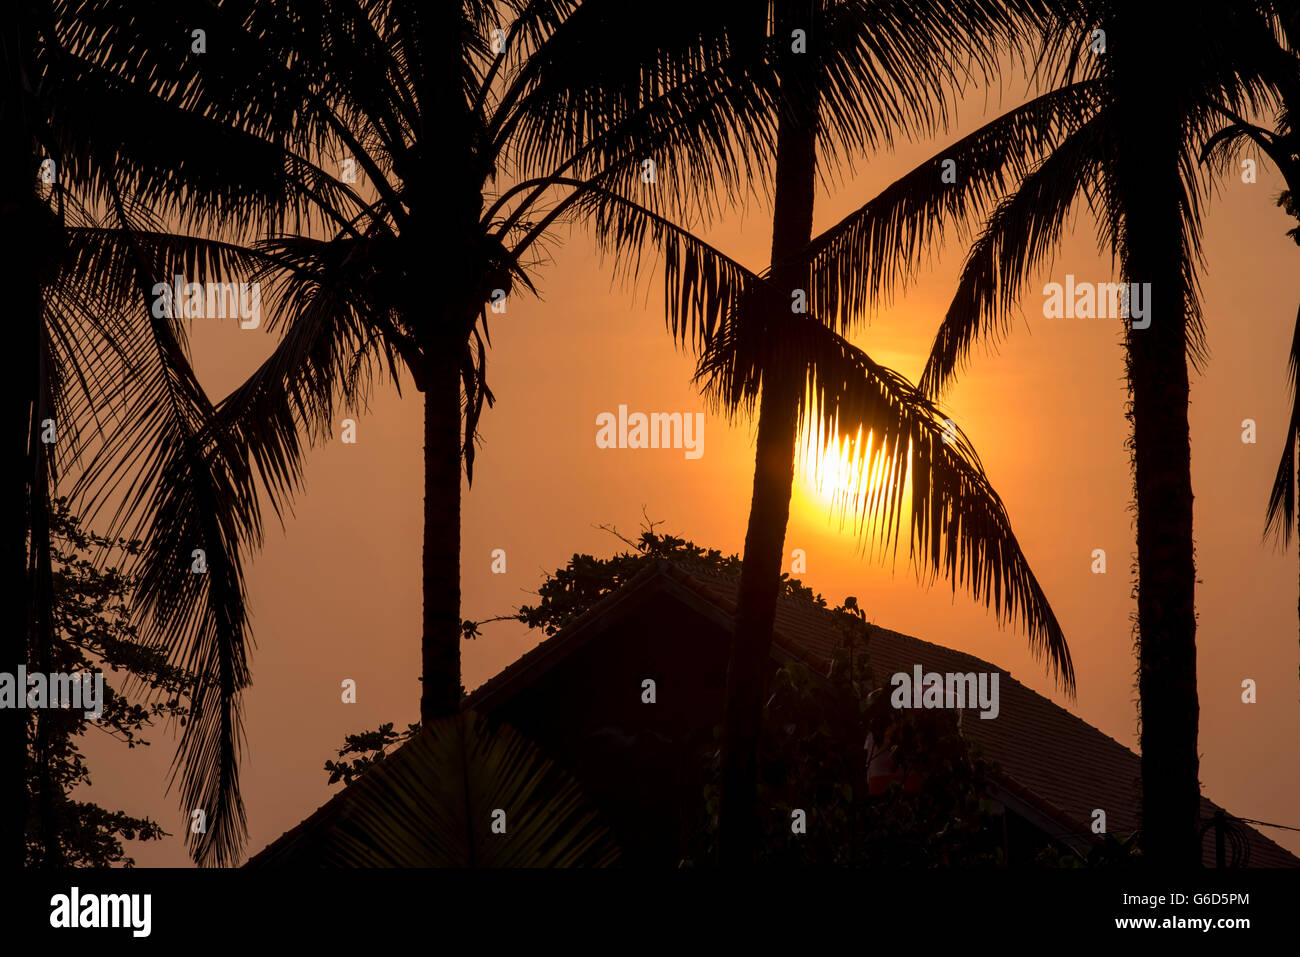 Dettaglio dell'architettura del beach house tetto sul tramonto estivo con Palm tree silhouettes foglia e tranquillo golden sunshine sfondo Foto Stock